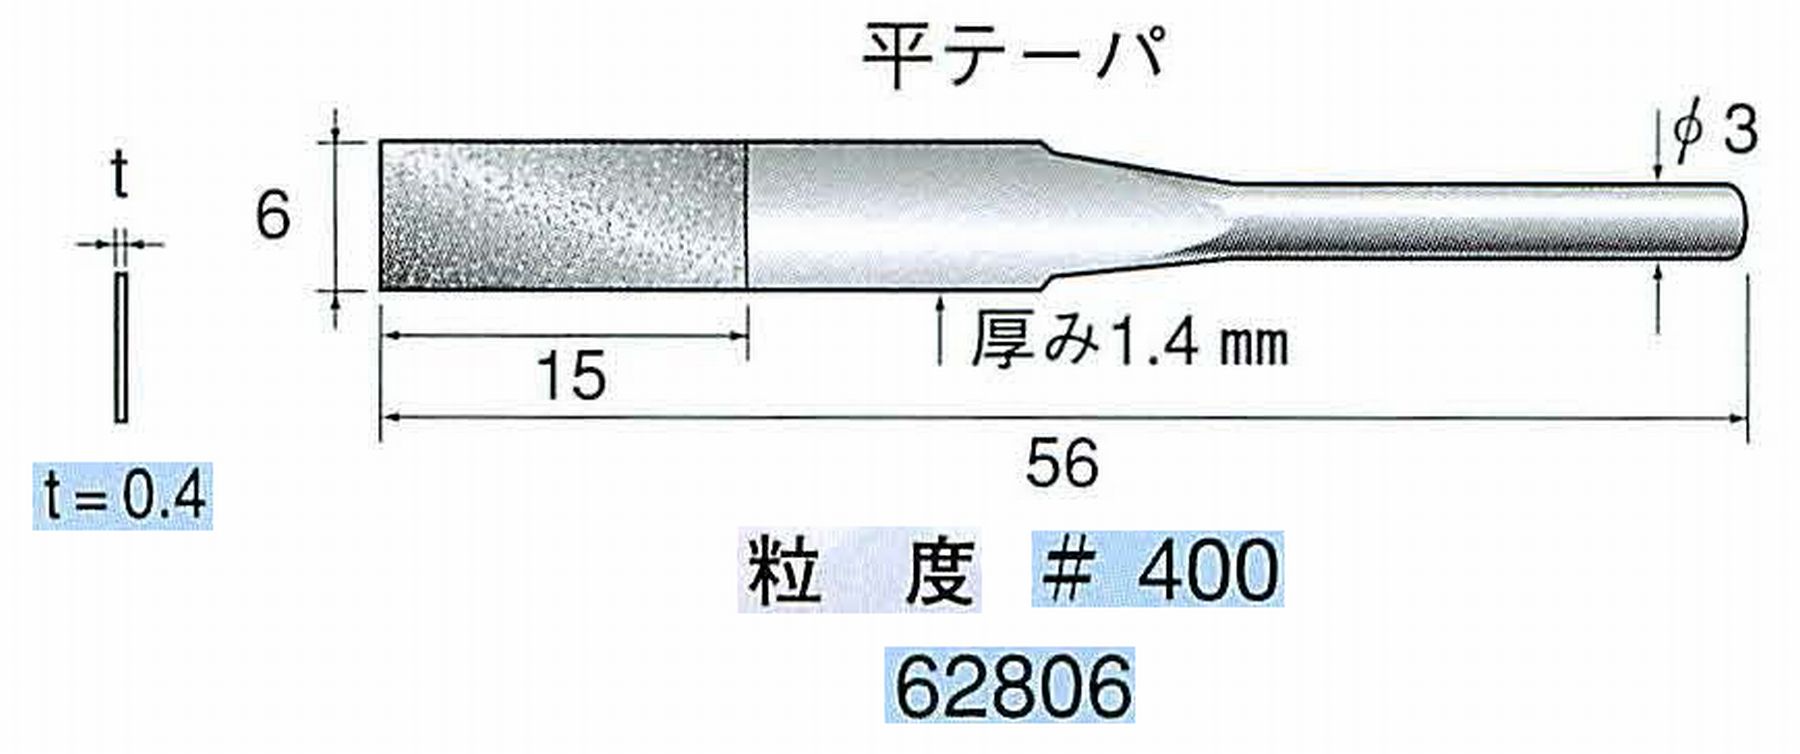 ナカニシ/NAKANISHI 電着ダイヤモンドヤスリショートタイプ 平テーパ 62806